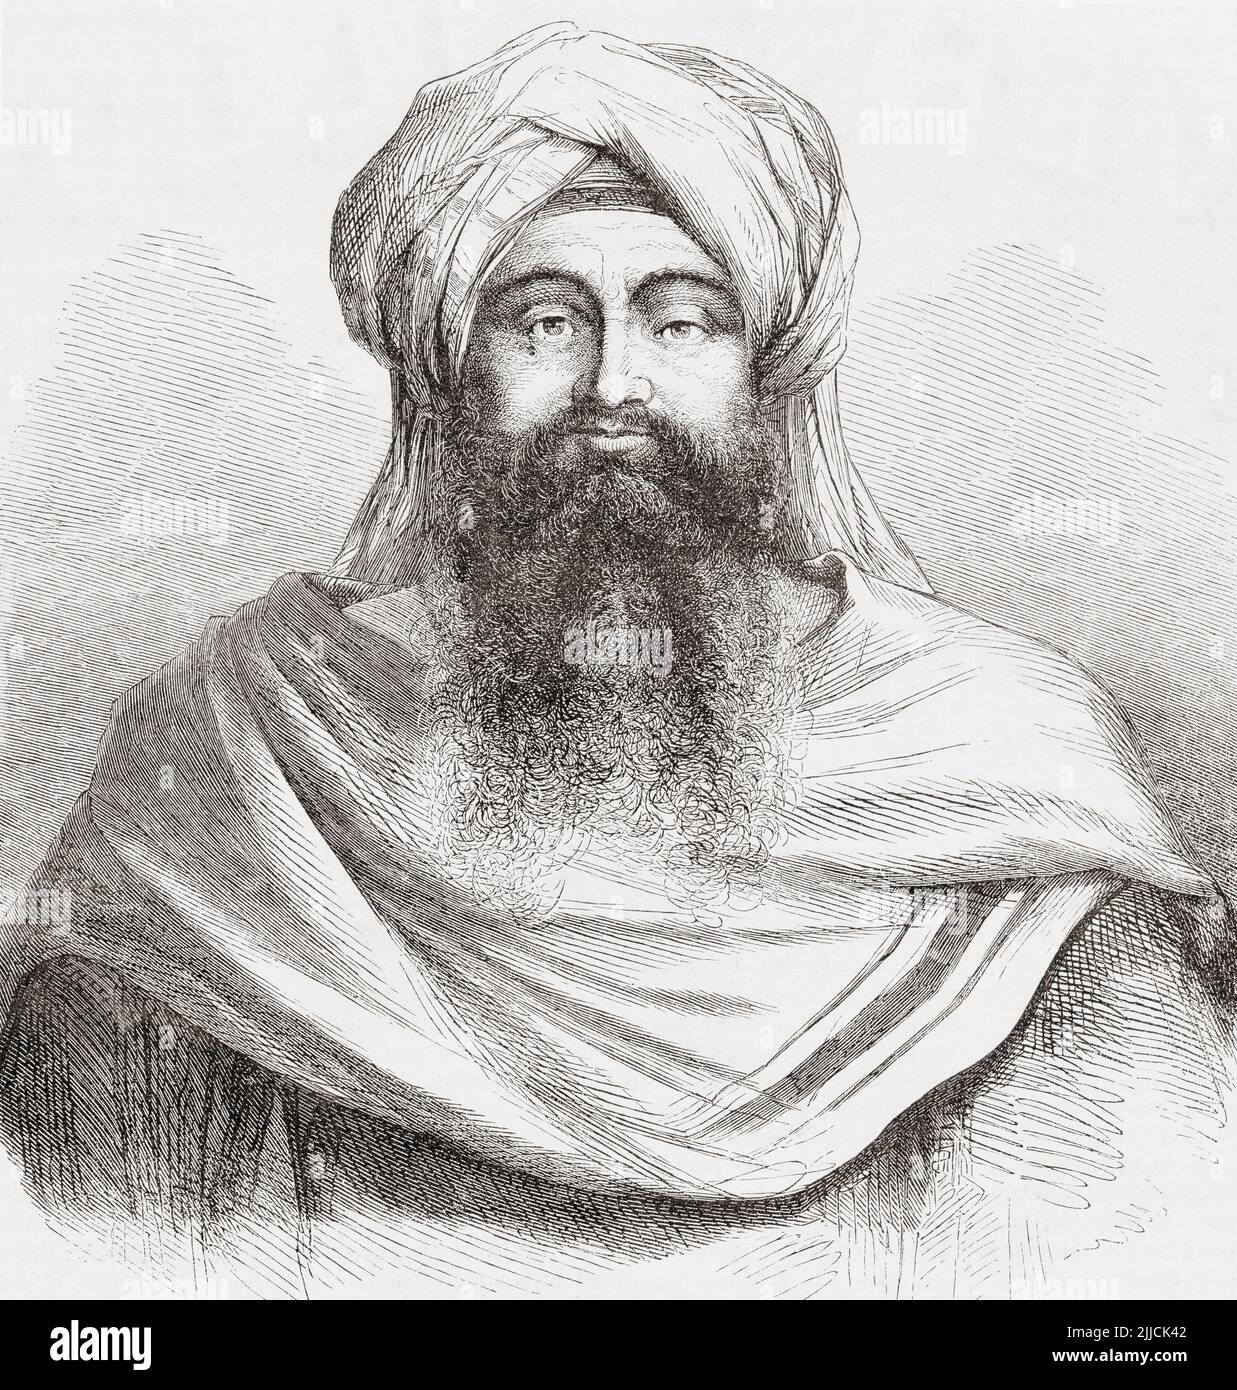 Mawlay Abd al-Rahman bin Hisham, 1778 - 1859. Sultán de Marruecos del 30 de noviembre de 1822 al 28 de agosto de 1859, como gobernante de la dinastía Alawi. De L'Univers Illustre, publicado en París, 1859 Foto de stock